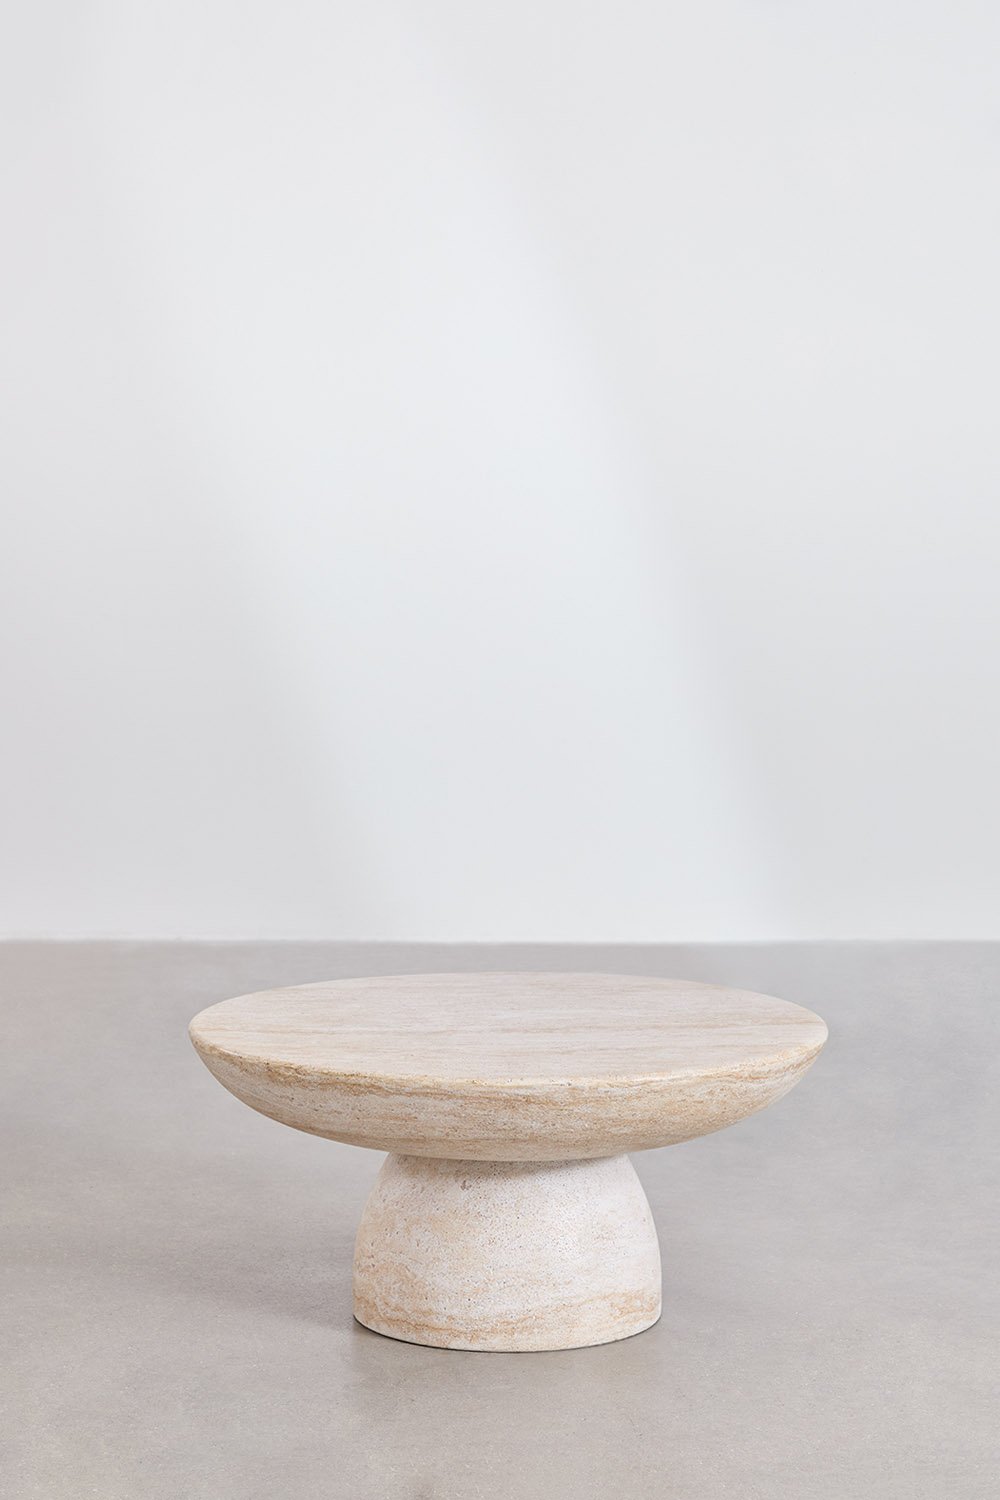 Tavolino rotondo in cemento effetto travertino (Ø70 cm) Velia, immagine della galleria 1